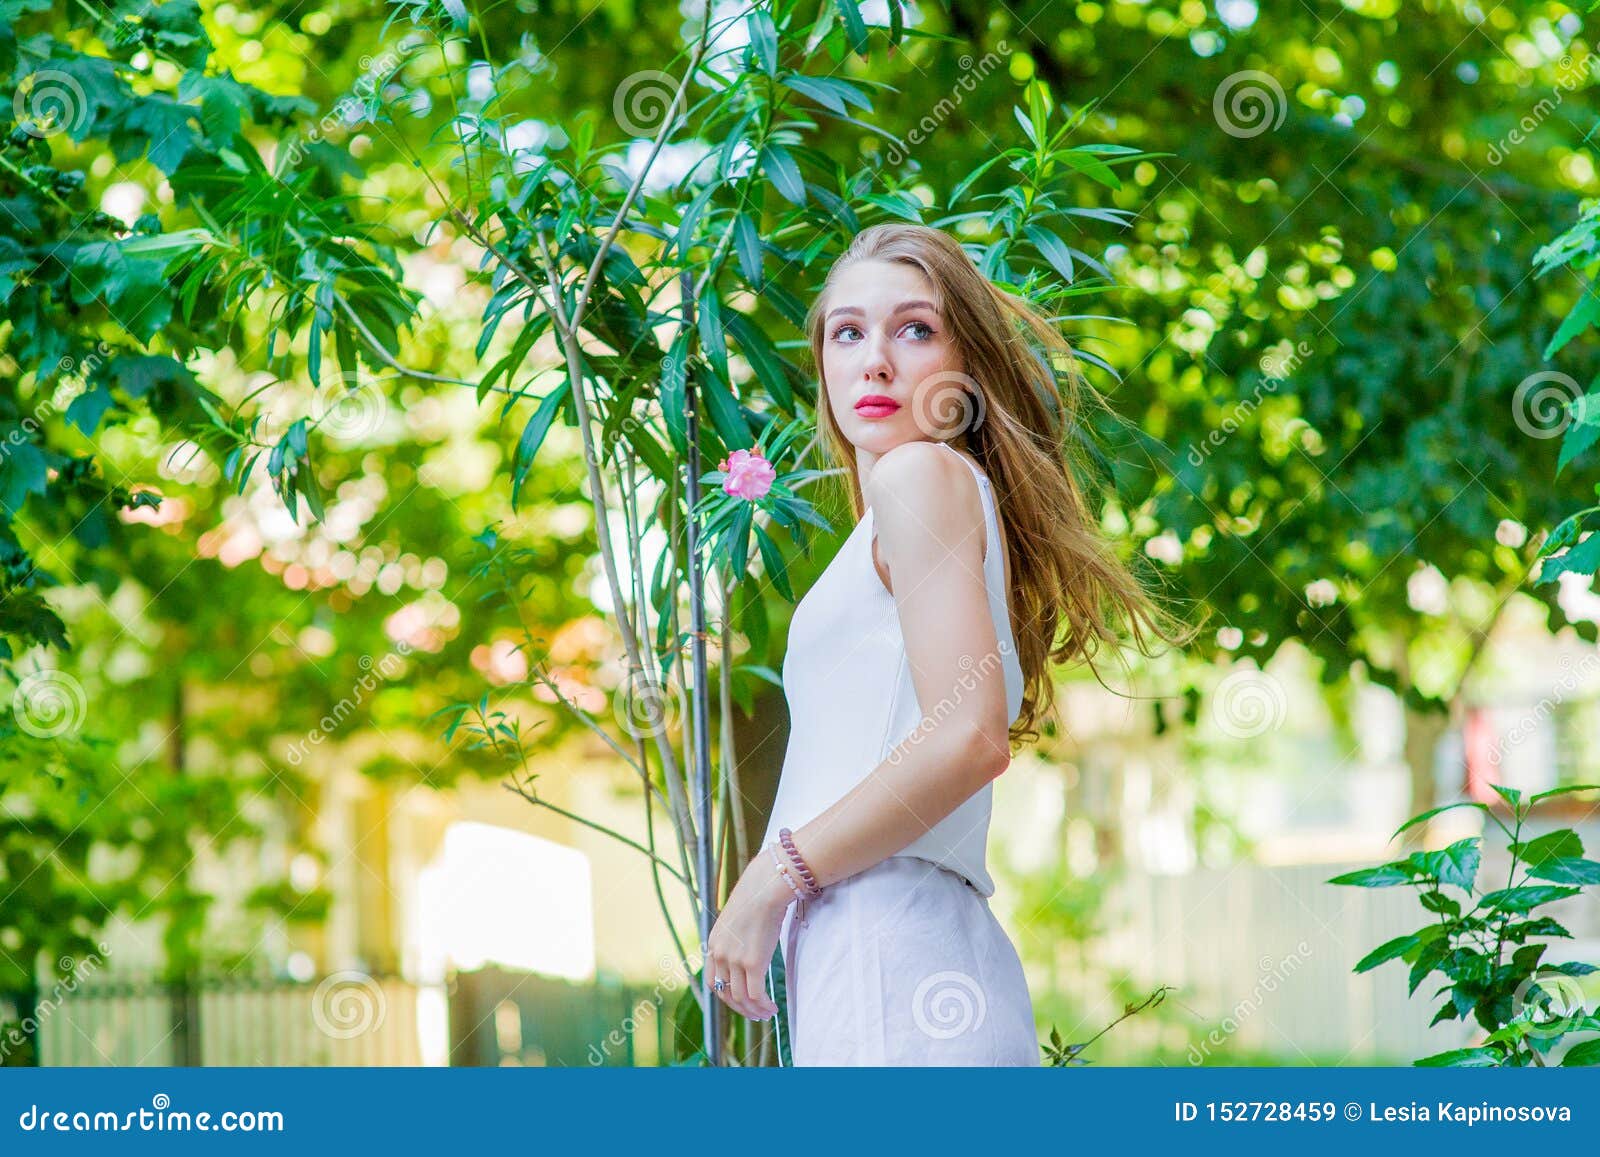 Young Beautiful Girl Posing Outdoor Wearing Fashionable White Dress